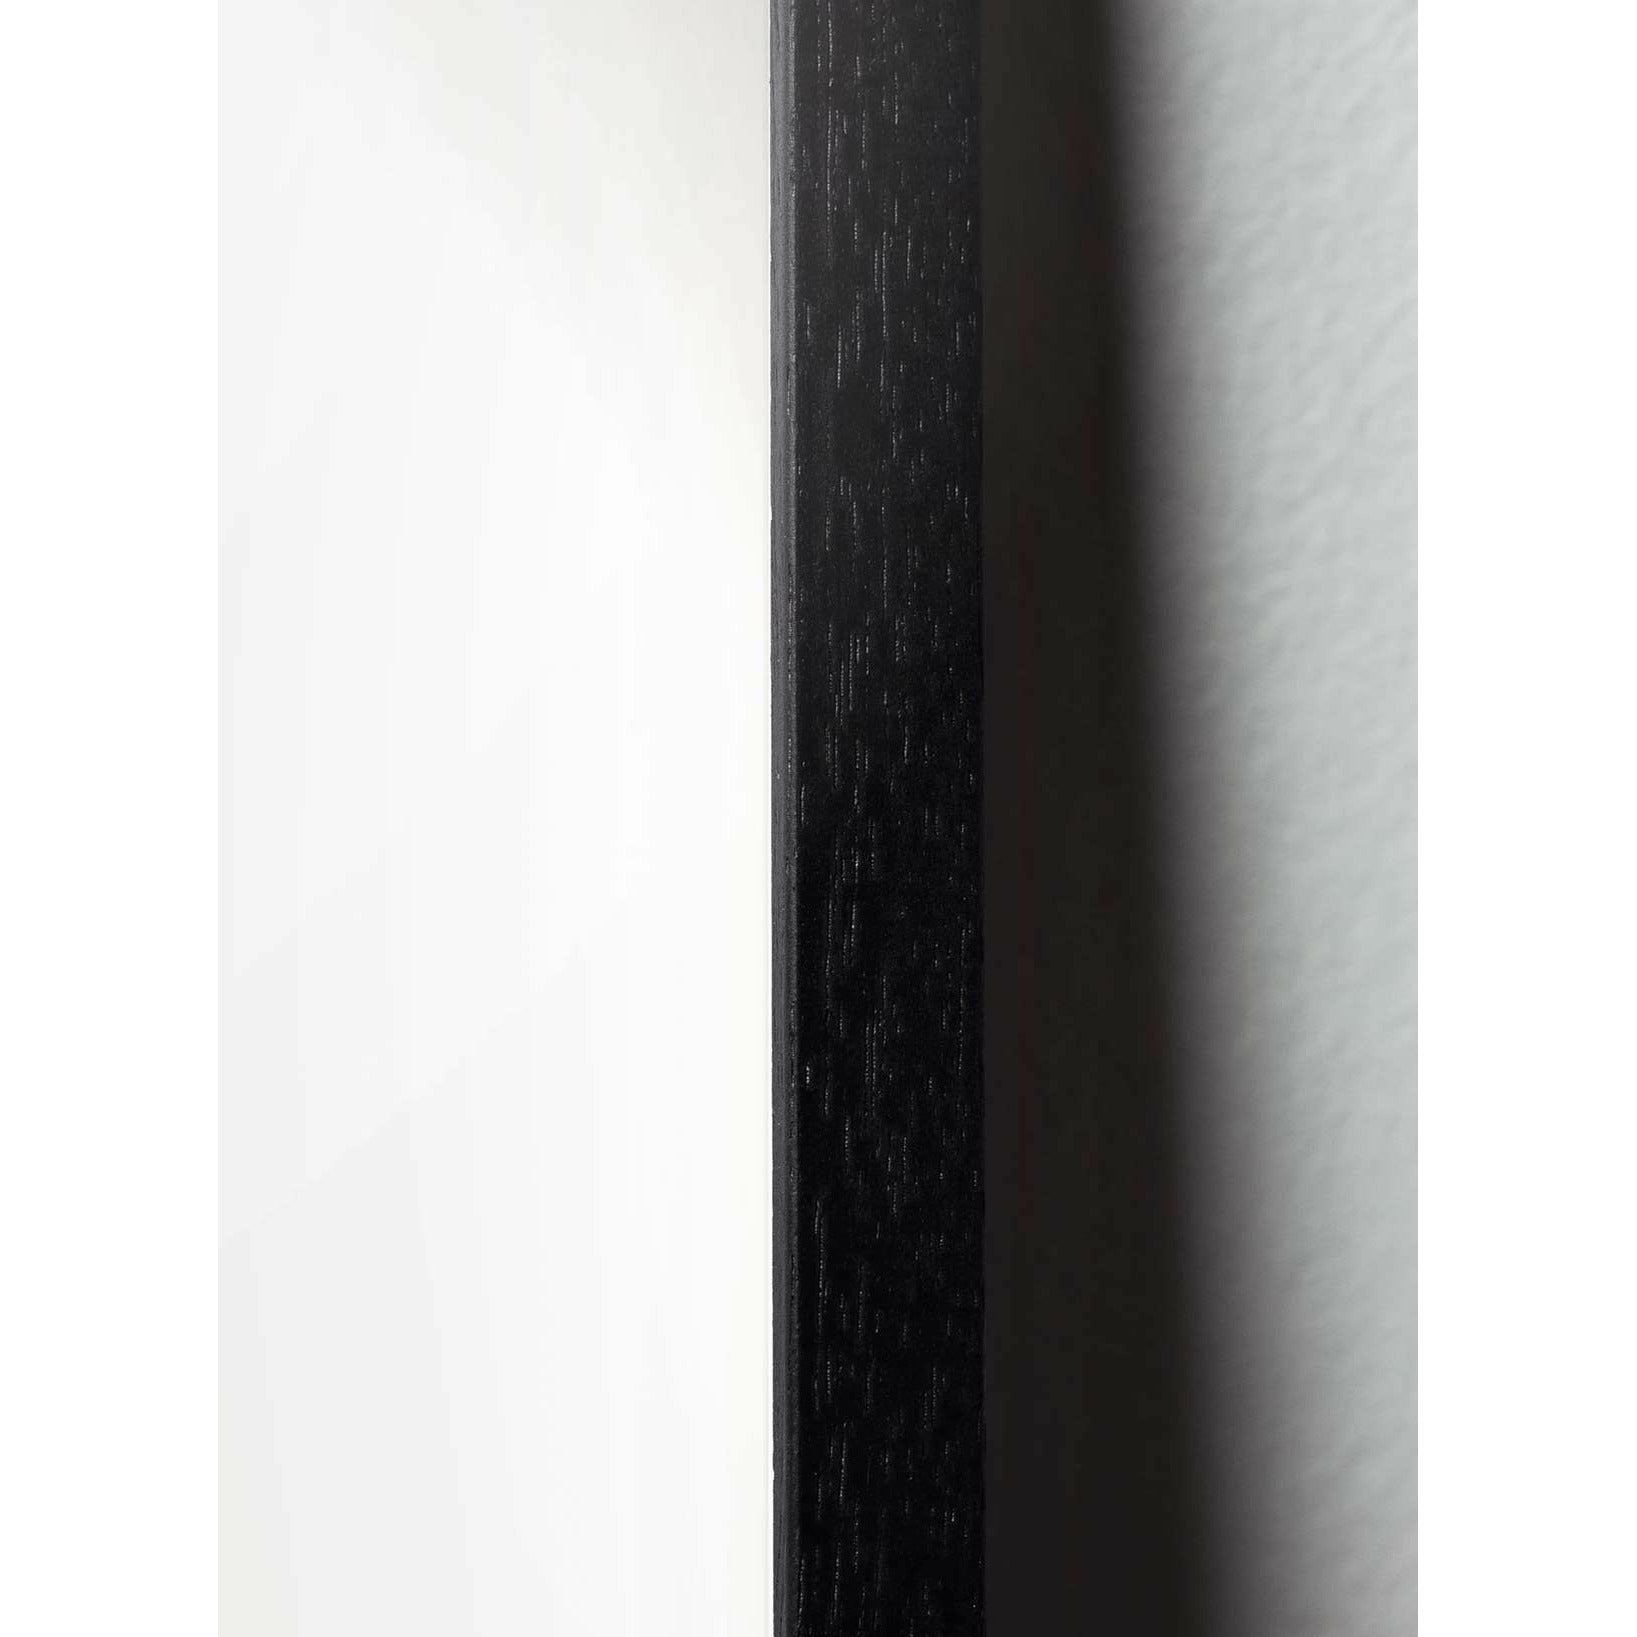 Brainchild Teddy Bear Line Poster, Rahmen aus schwarz lackiertem Holz 70x100 cm, weißer Hintergrund